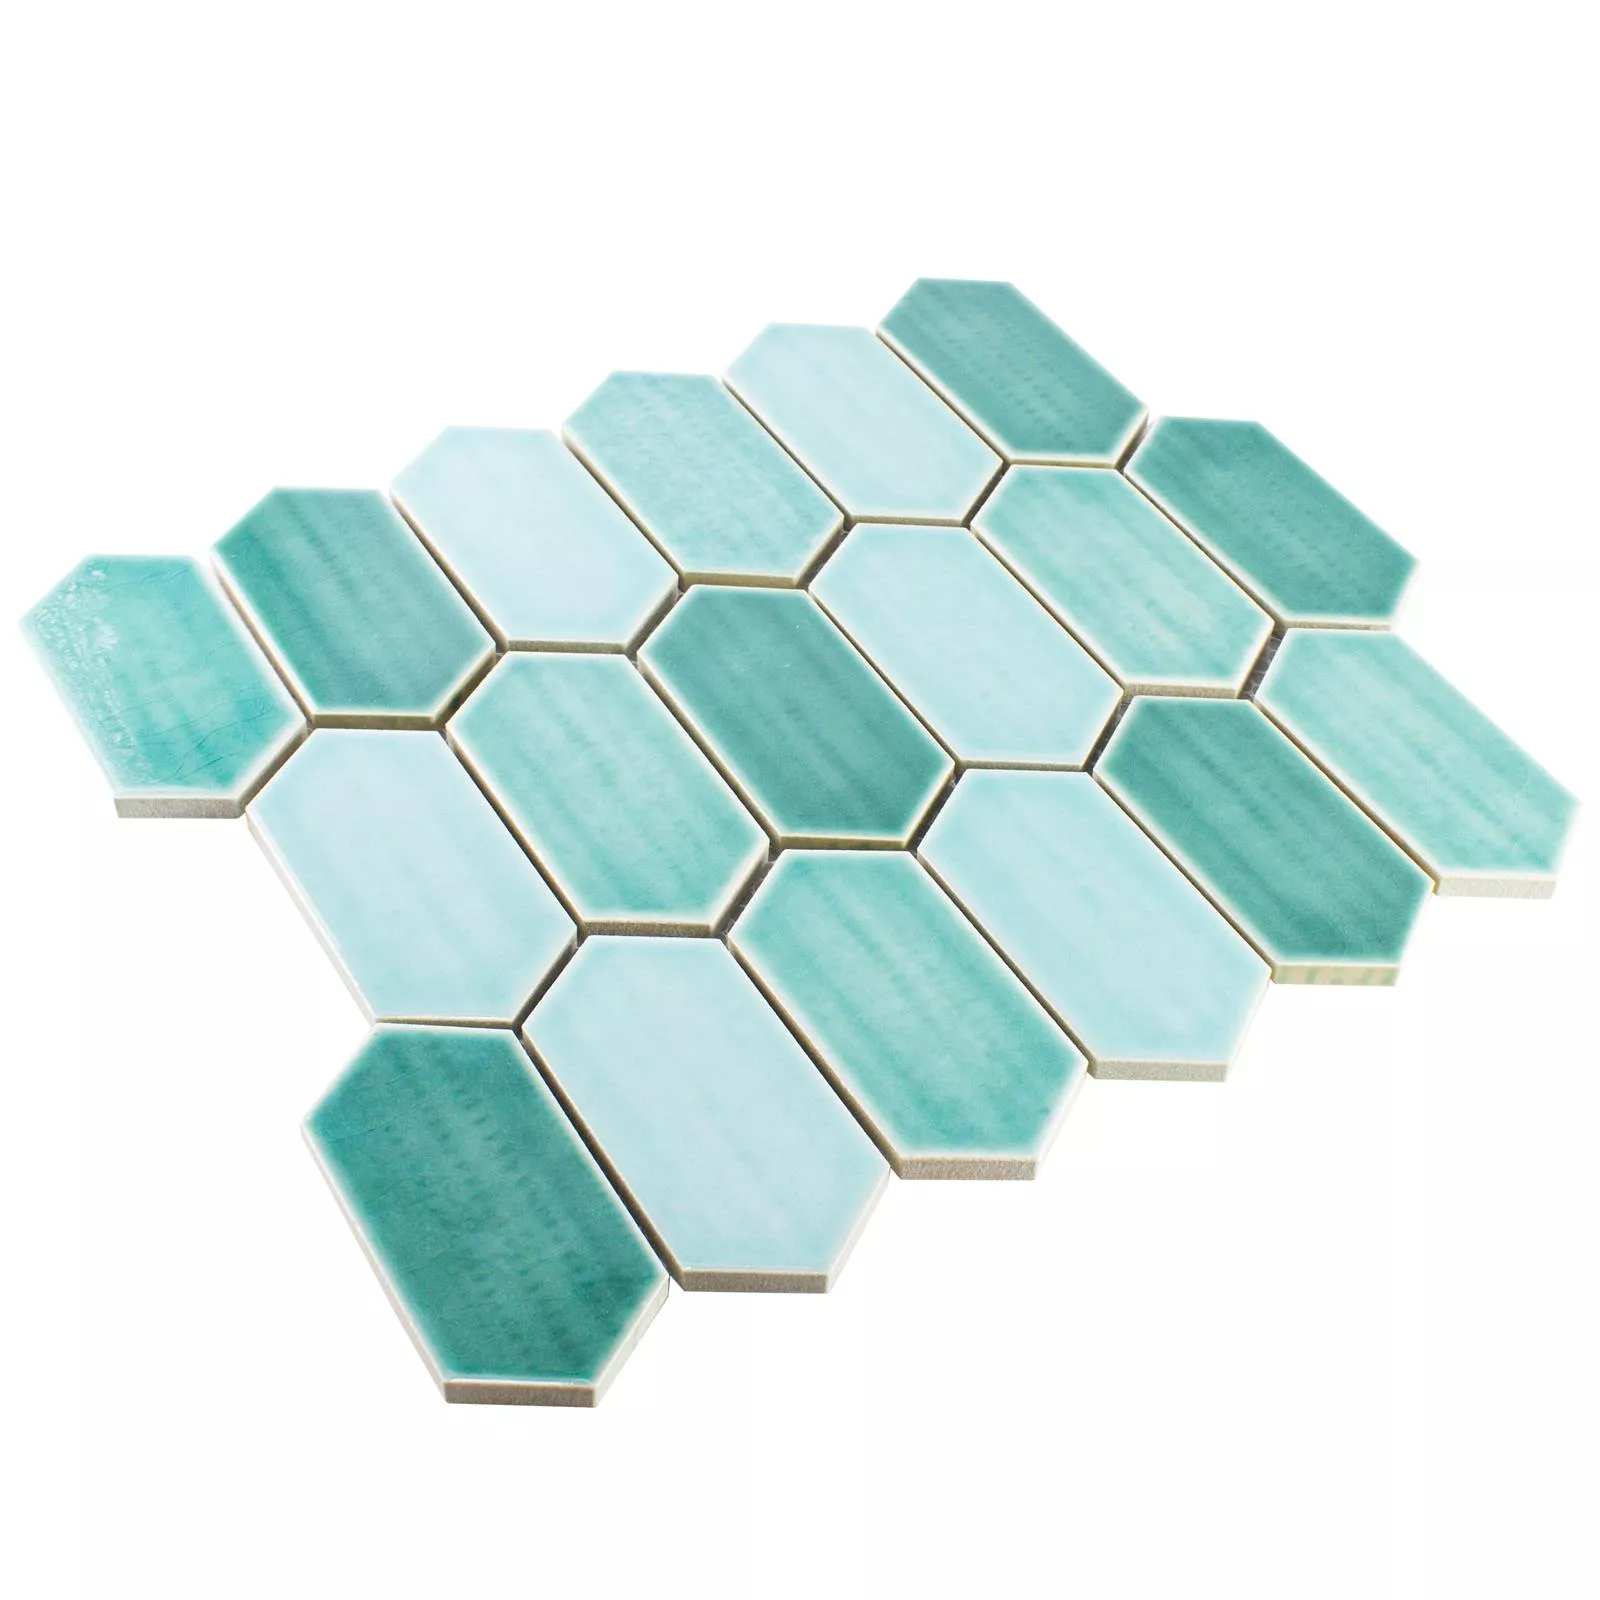 Muestra Cerámica Azulejos De Mosaico McCook Hexagonales Larga Turquesa Verde